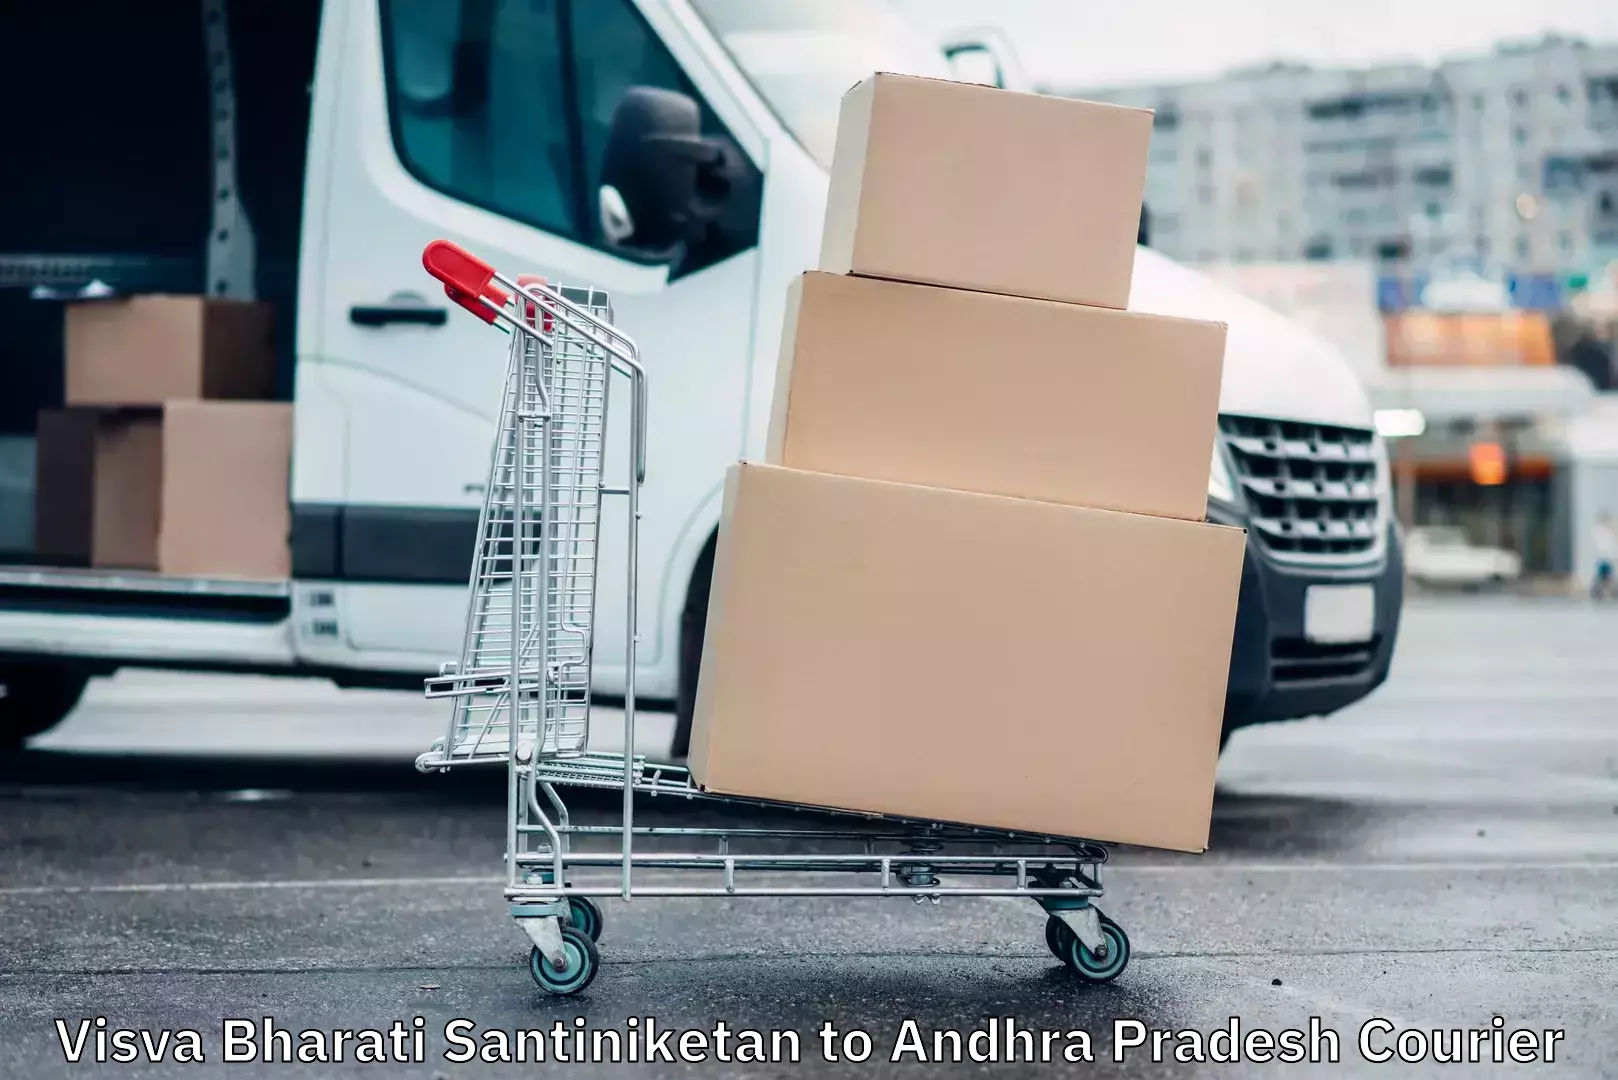 Courier service efficiency Visva Bharati Santiniketan to Andhra Pradesh